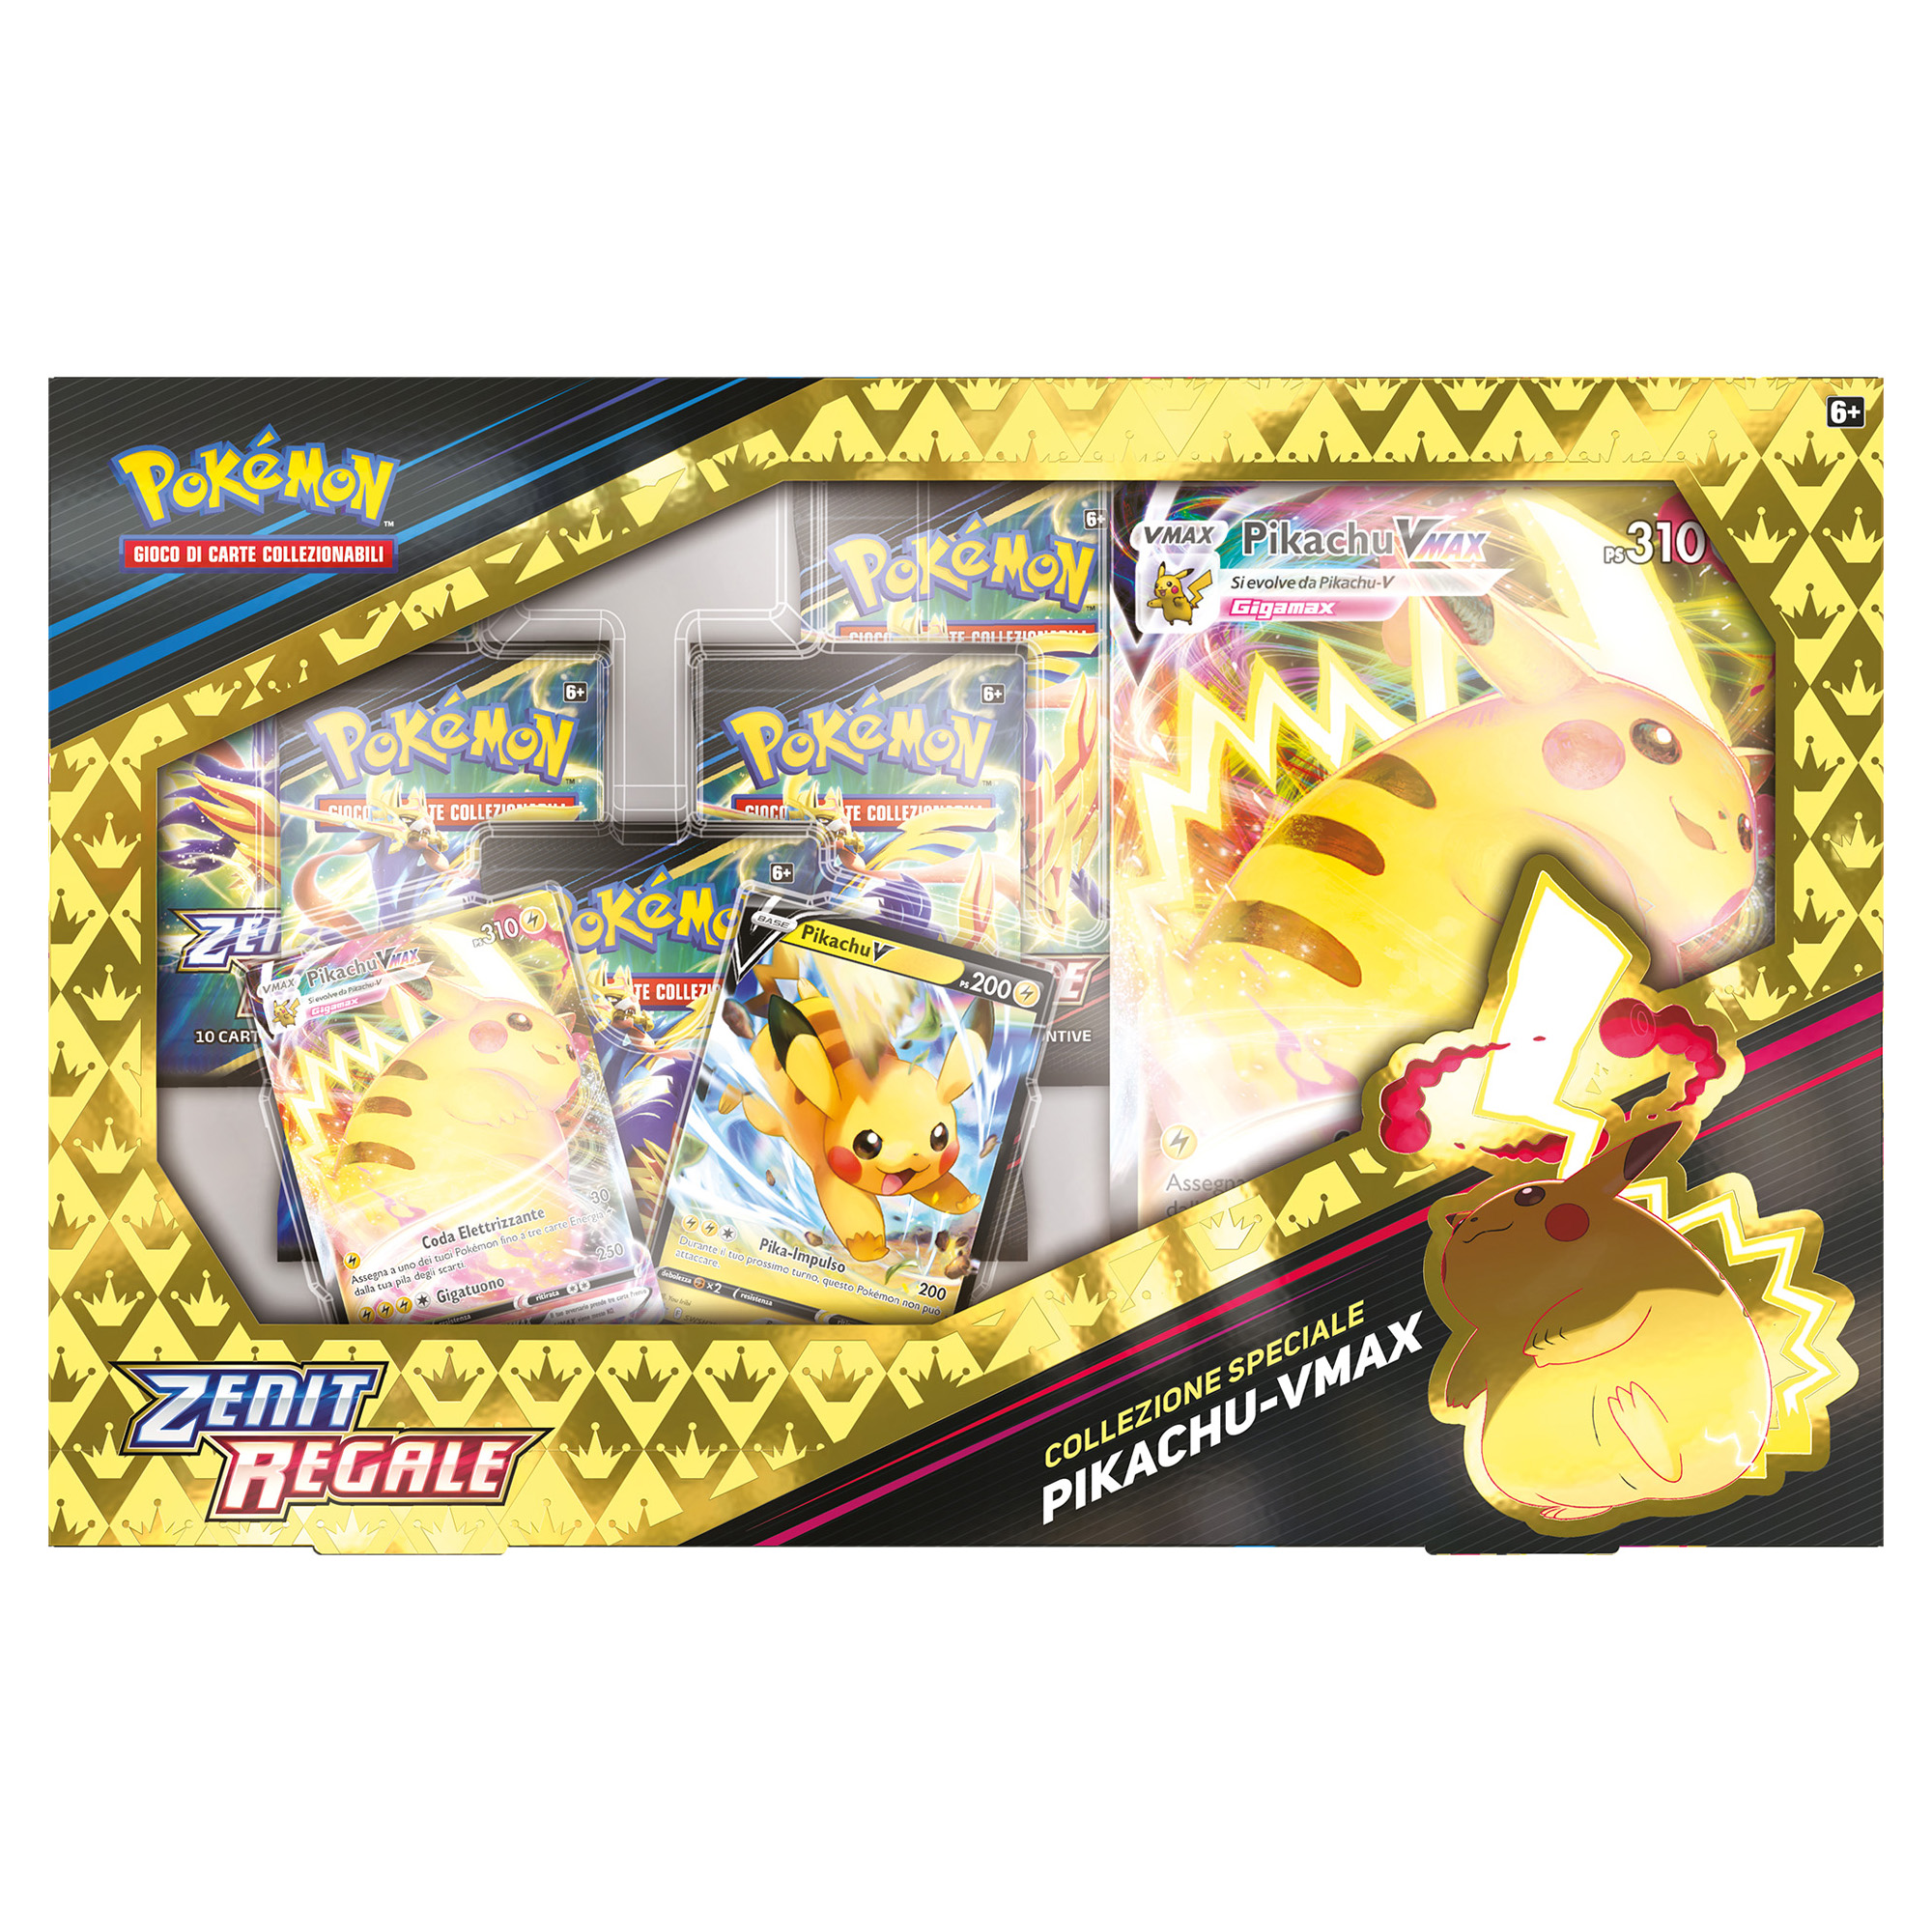 Pokémon Collezione Speciale Pikachu-VMAX Zenit Regale - Pokémon